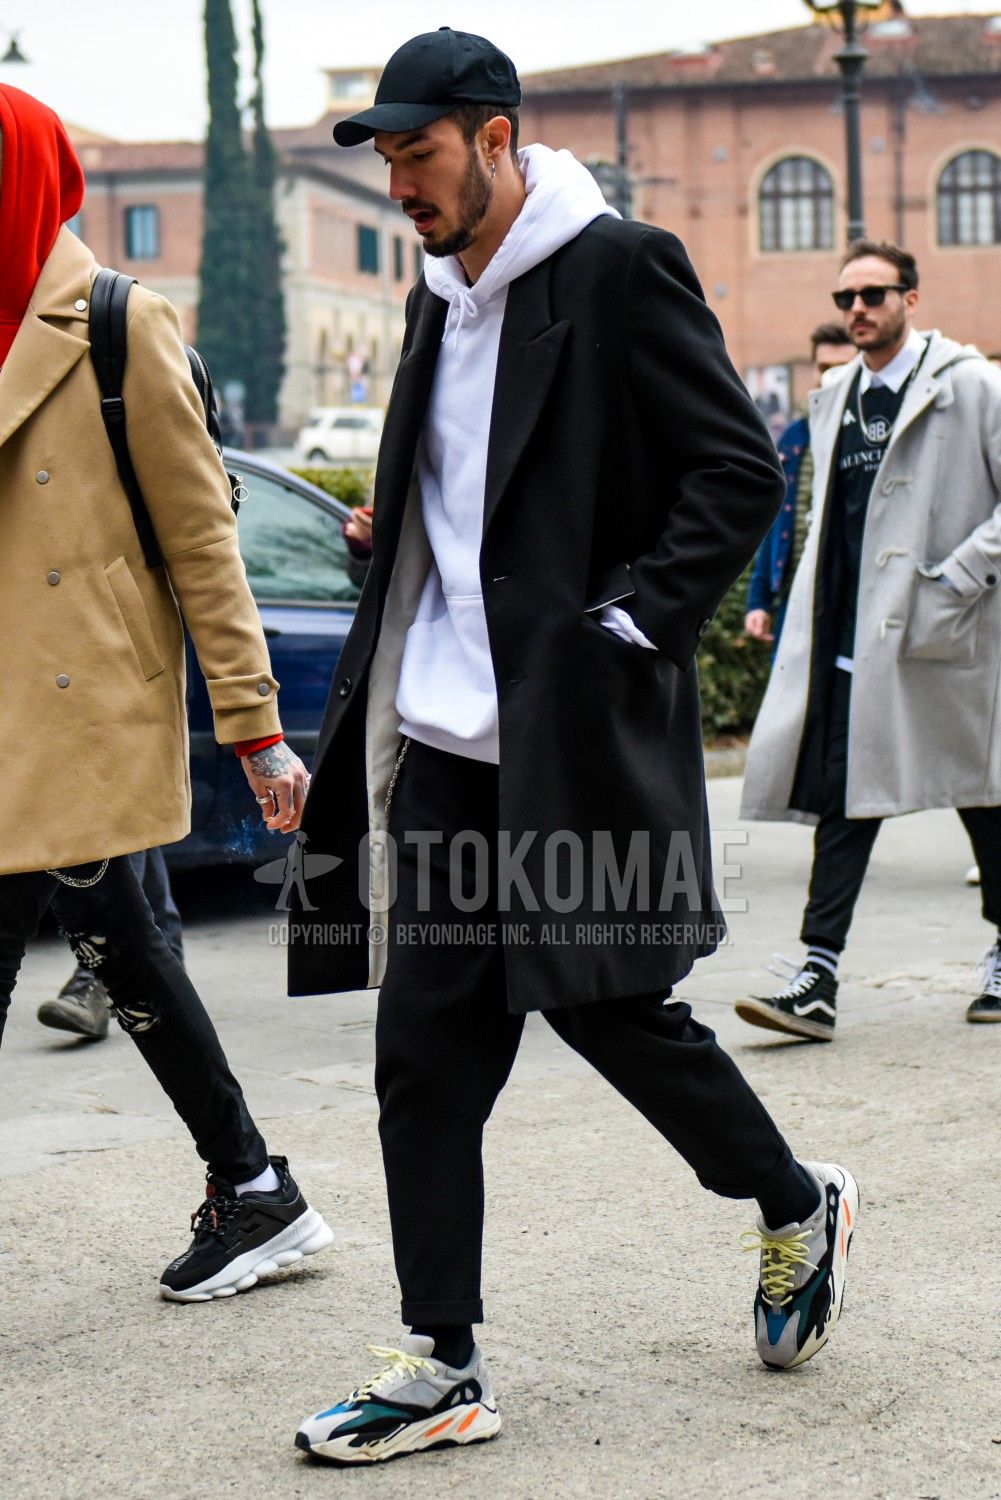 コート スウェットパーカー メンズ コーデ特集 ミックススタイルでこなれ感を演出した冬の着こなしを紹介 メンズファッションメディア Otokomaeotokomae 男前研究所